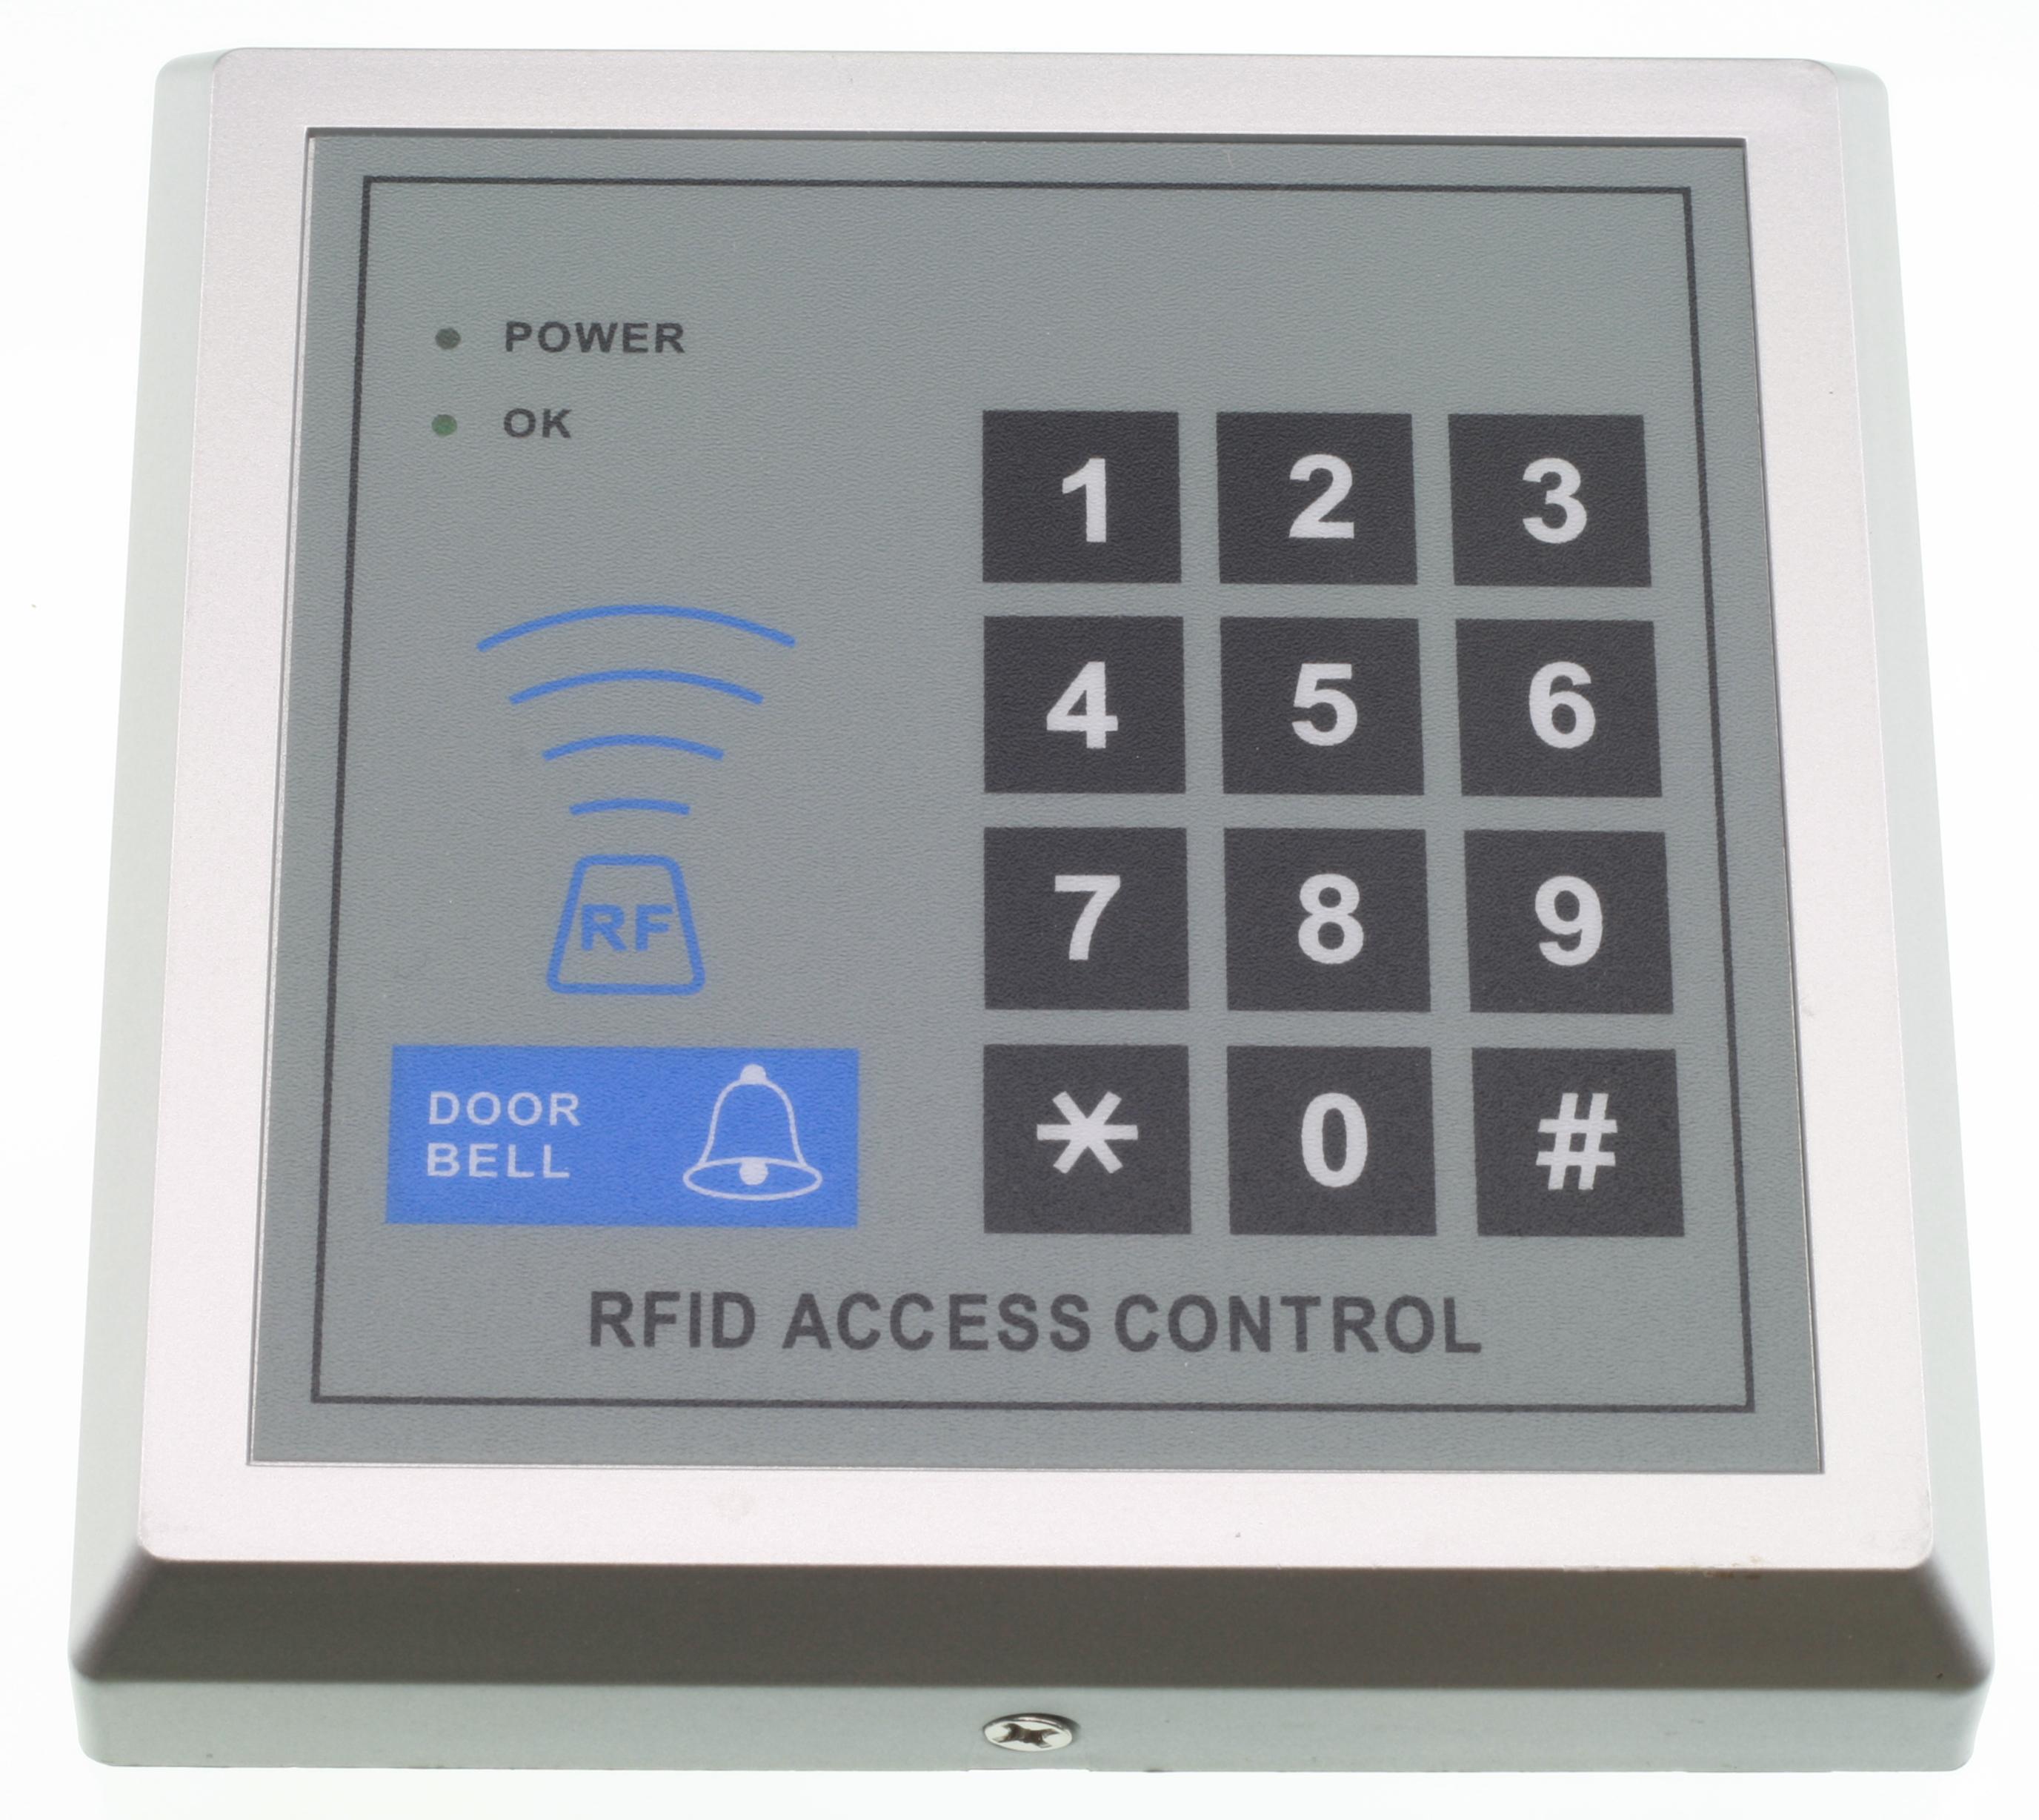 Access controller. Access Control RFID панель. Access Control программирование. Инструкция система контроля доступа RFID. Панель управления ЖК ki-Keypad Control techniques.